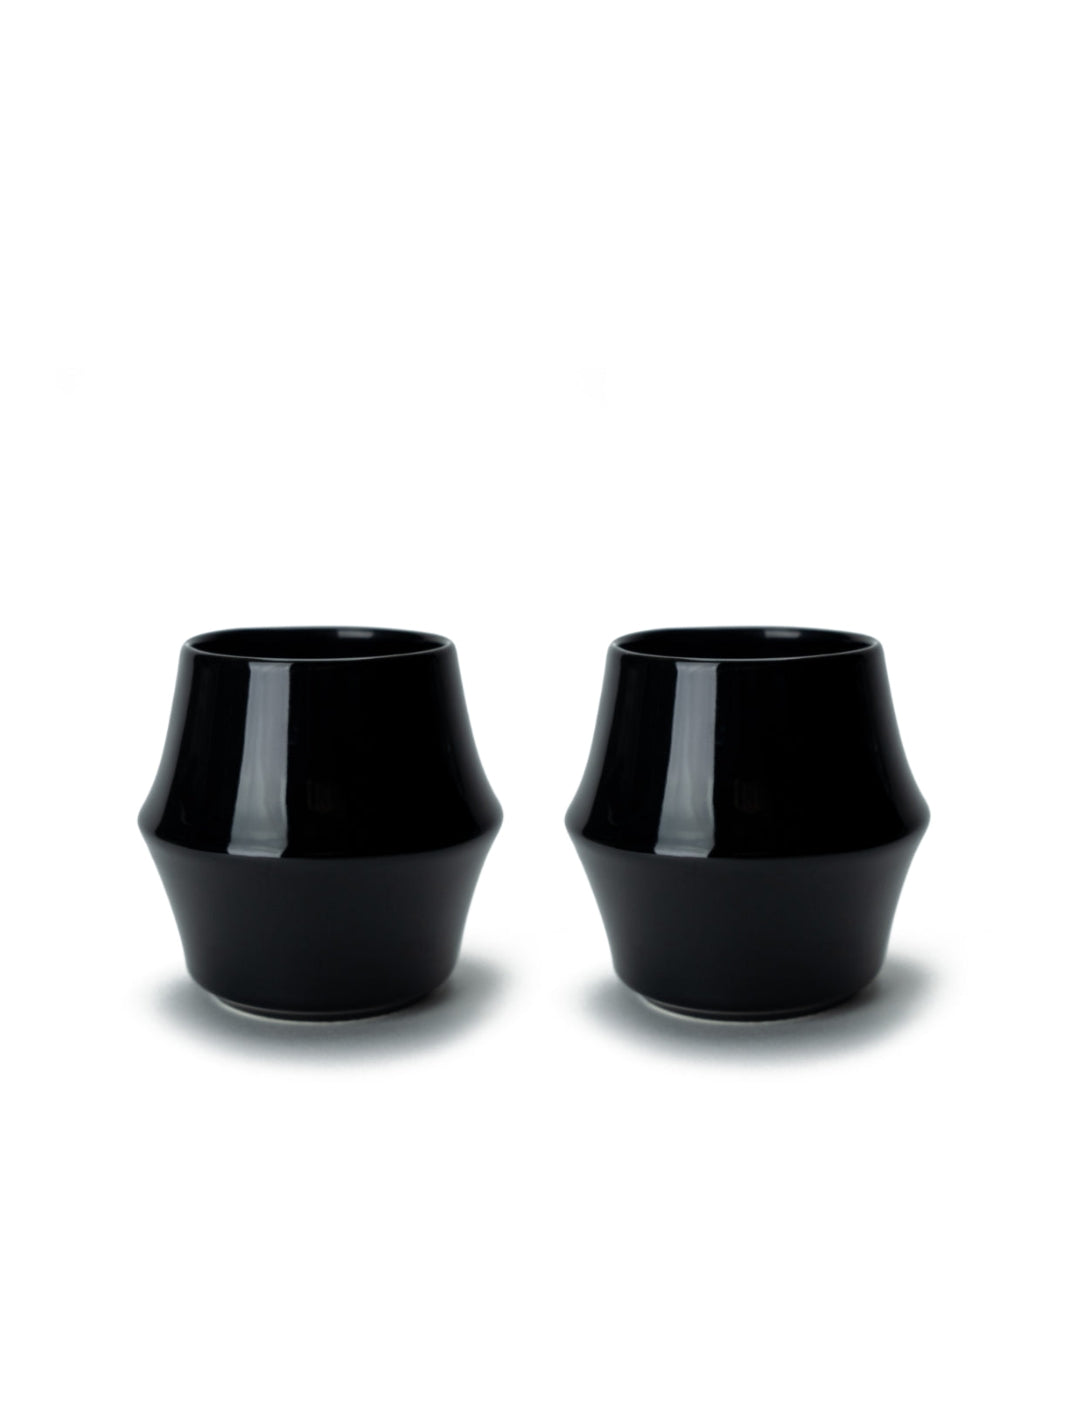 KRUVE CASCADE Porcelain Espresso Glasses (2-Pack)